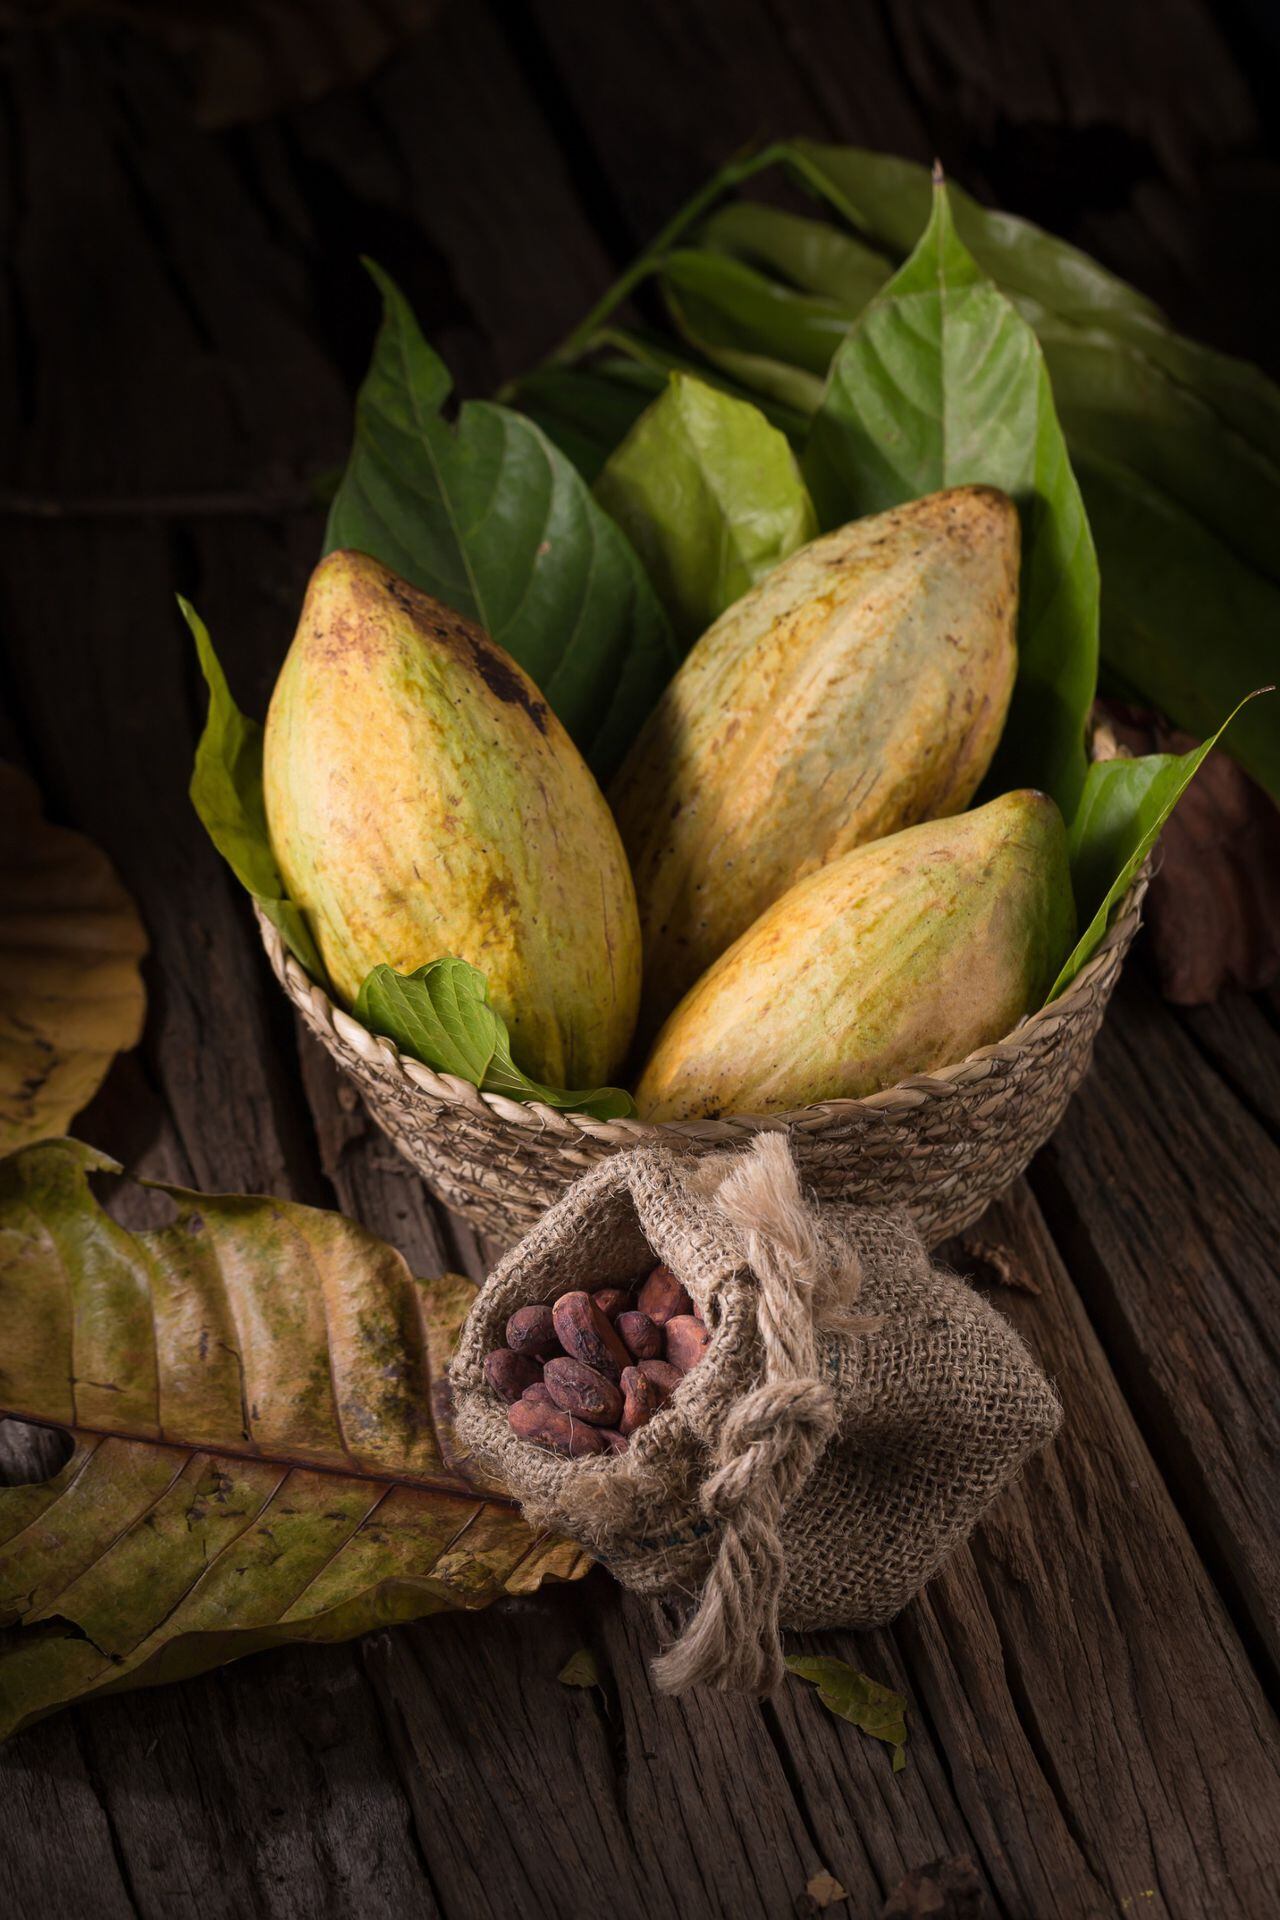 El cacao es rico en micronutrientes como polifenoles y potentes flavonoides antioxidantes, que ayudan a reducir la inflamación, bajar la presión arterial y mejorar el colesterol y el azúcar en sangre.